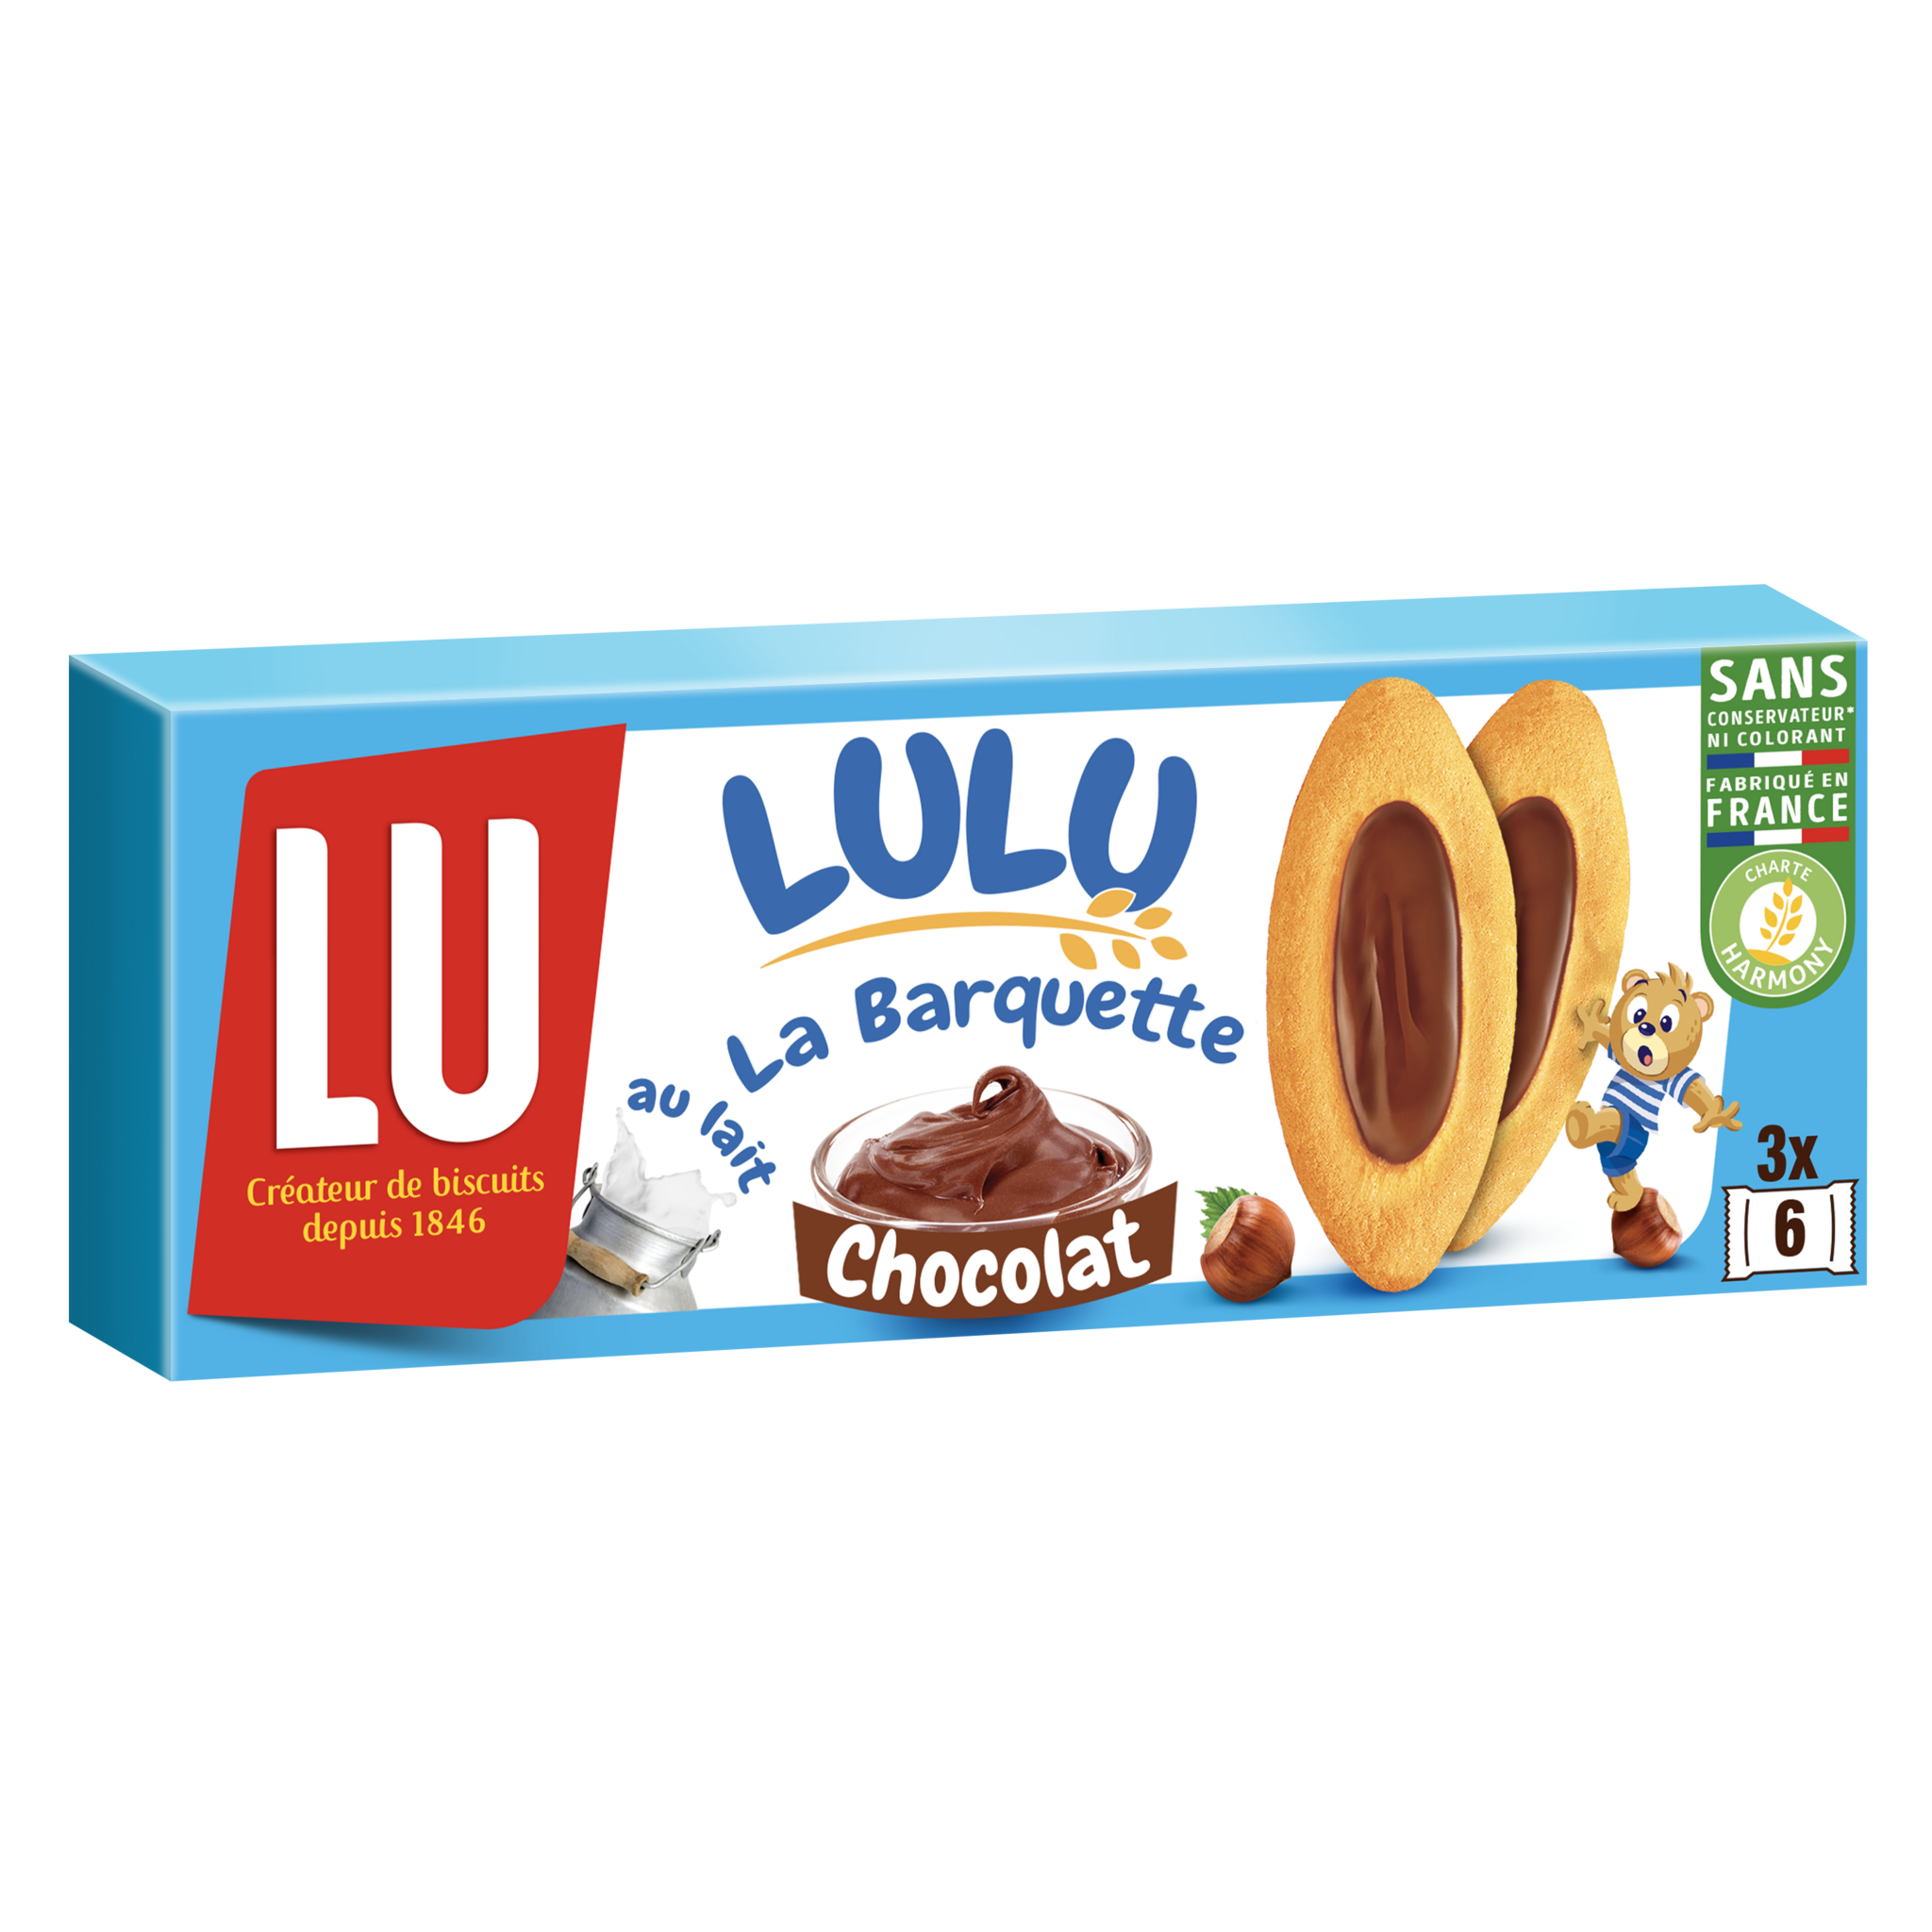 La Barquette (Chocolat) (Lu)